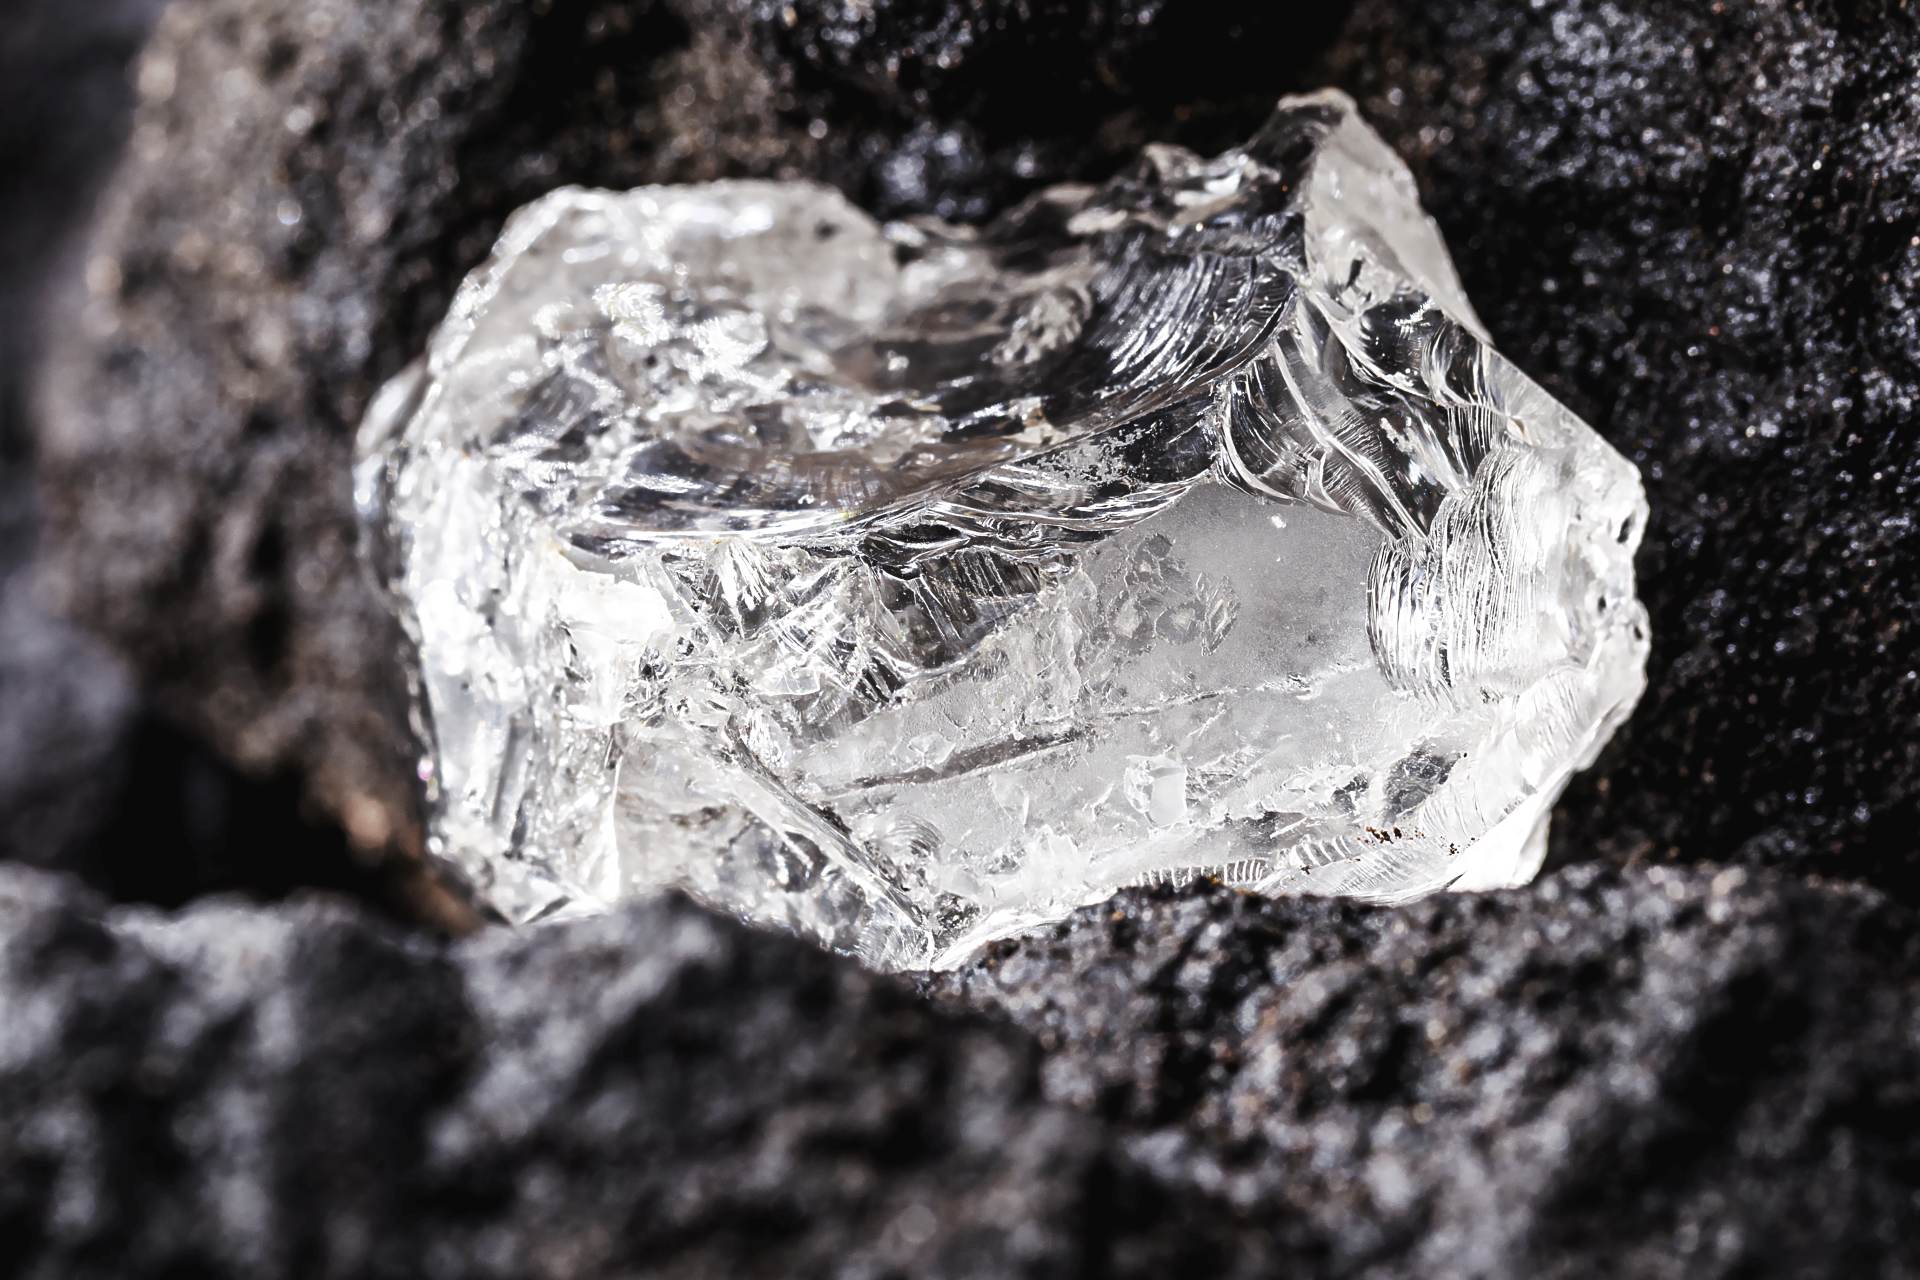  Rusko komodity zajímavosti diamant firmy Alrosa 